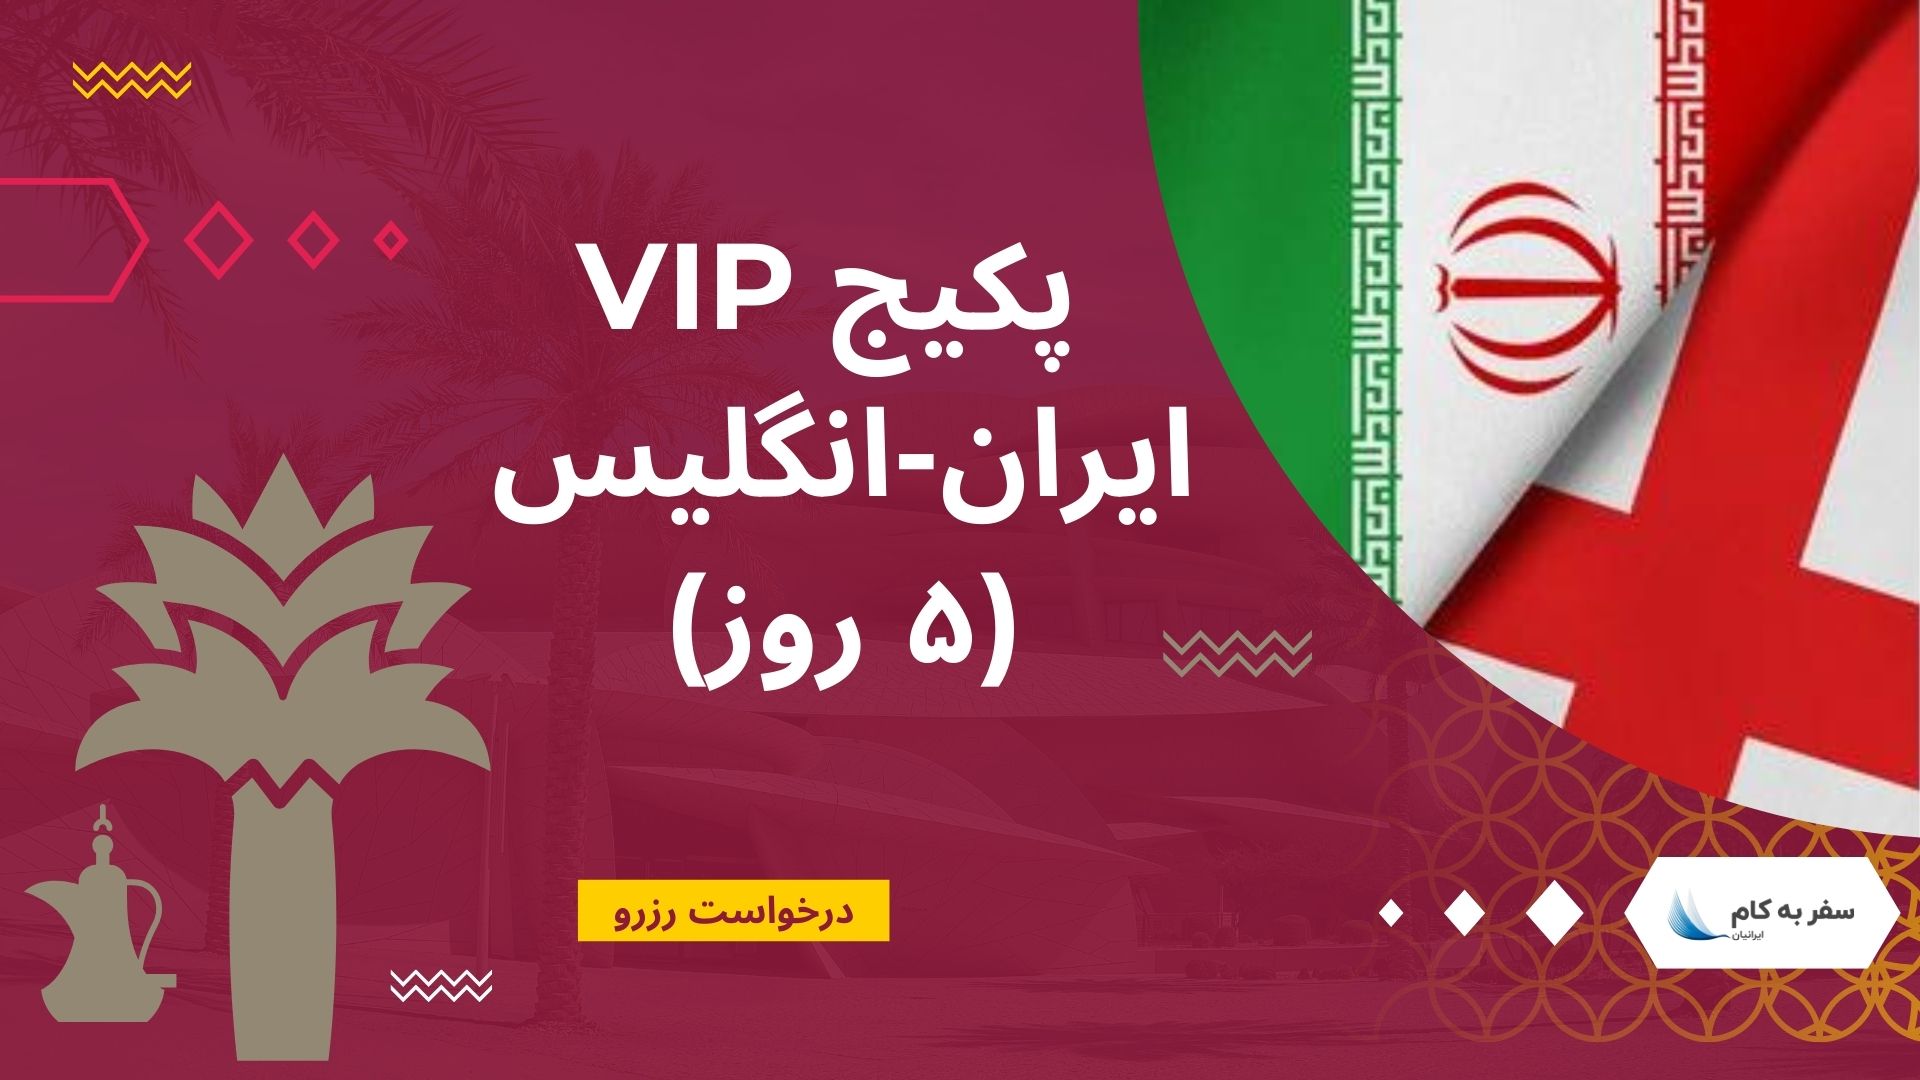 پکیج VIP ایران – انگلیس (۵ روز) – جام جهانی قطر 2022